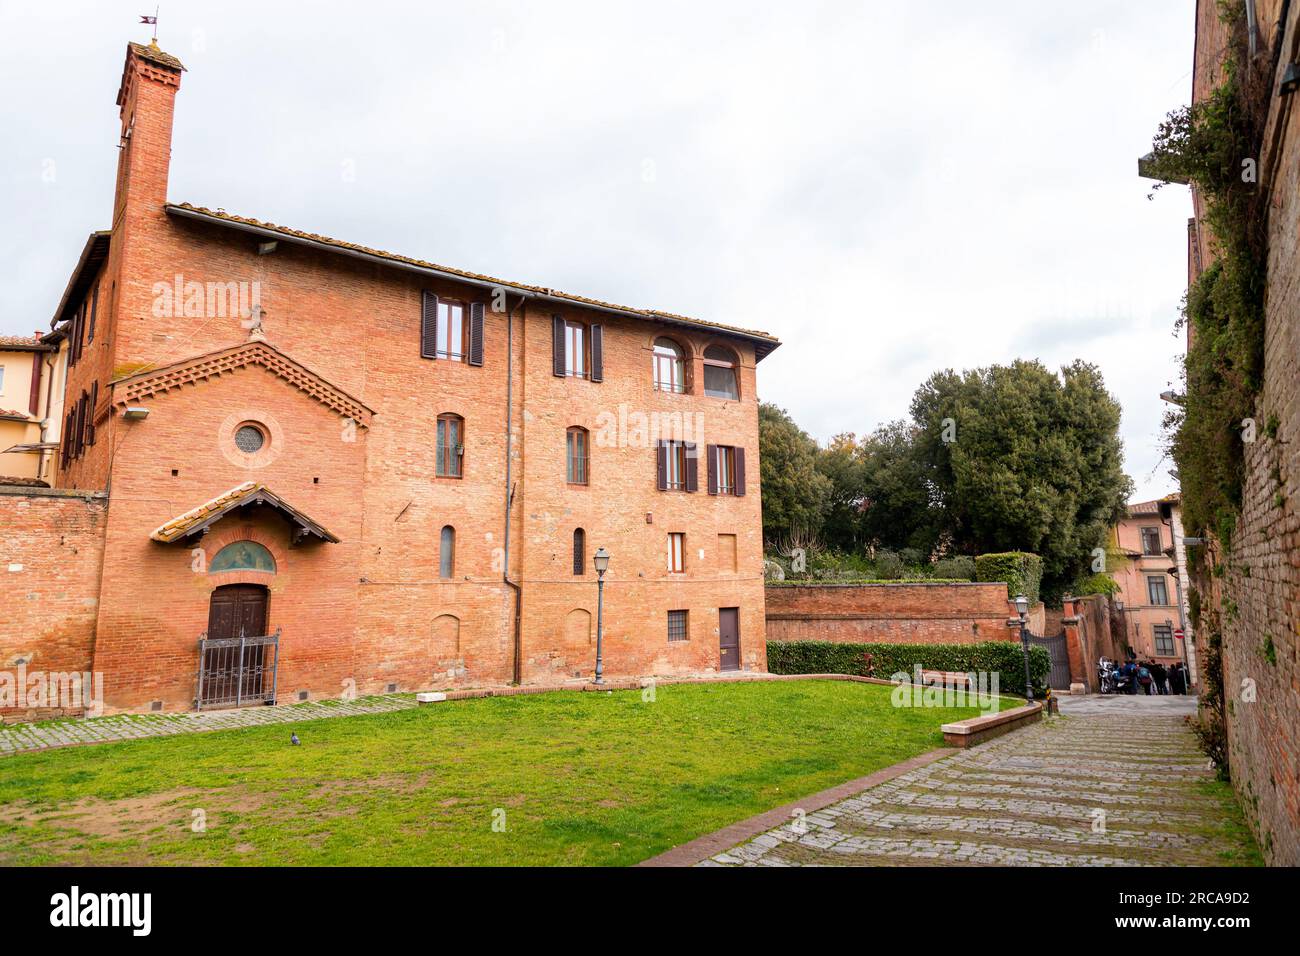 Siena, Italien - 7. April 2022: Allgemeine Architektur und Blick auf die Straße aus der historischen italienischen Stadt Siena in der Toskana. Stockfoto